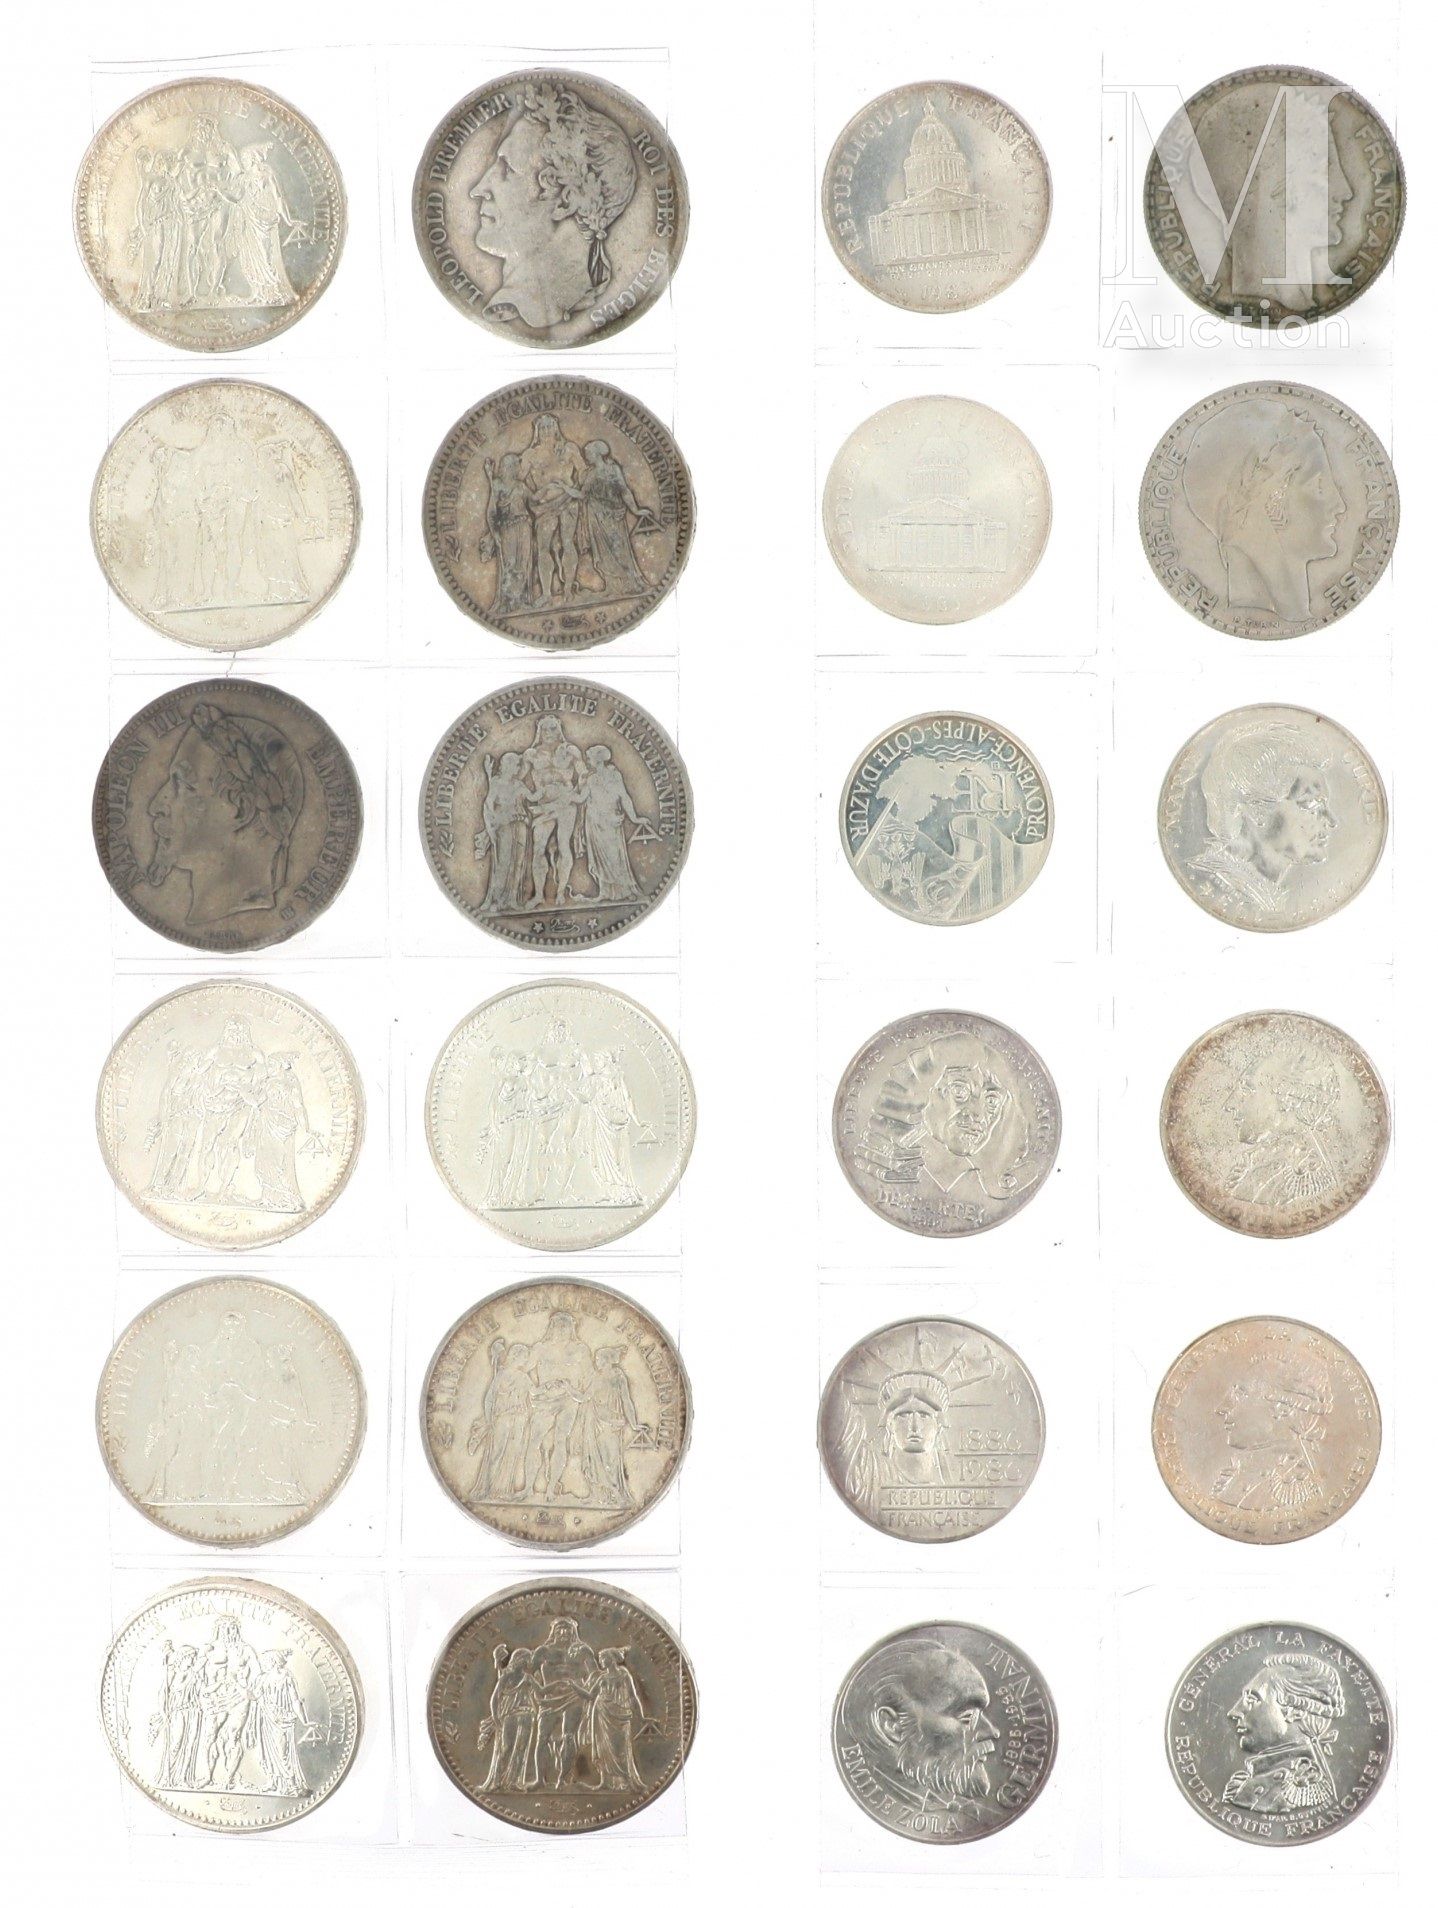 LOT DE PIECES DE MONNAIE EN ARGENT Lot of silver coins including :

- 3 x 2 FF S&hellip;